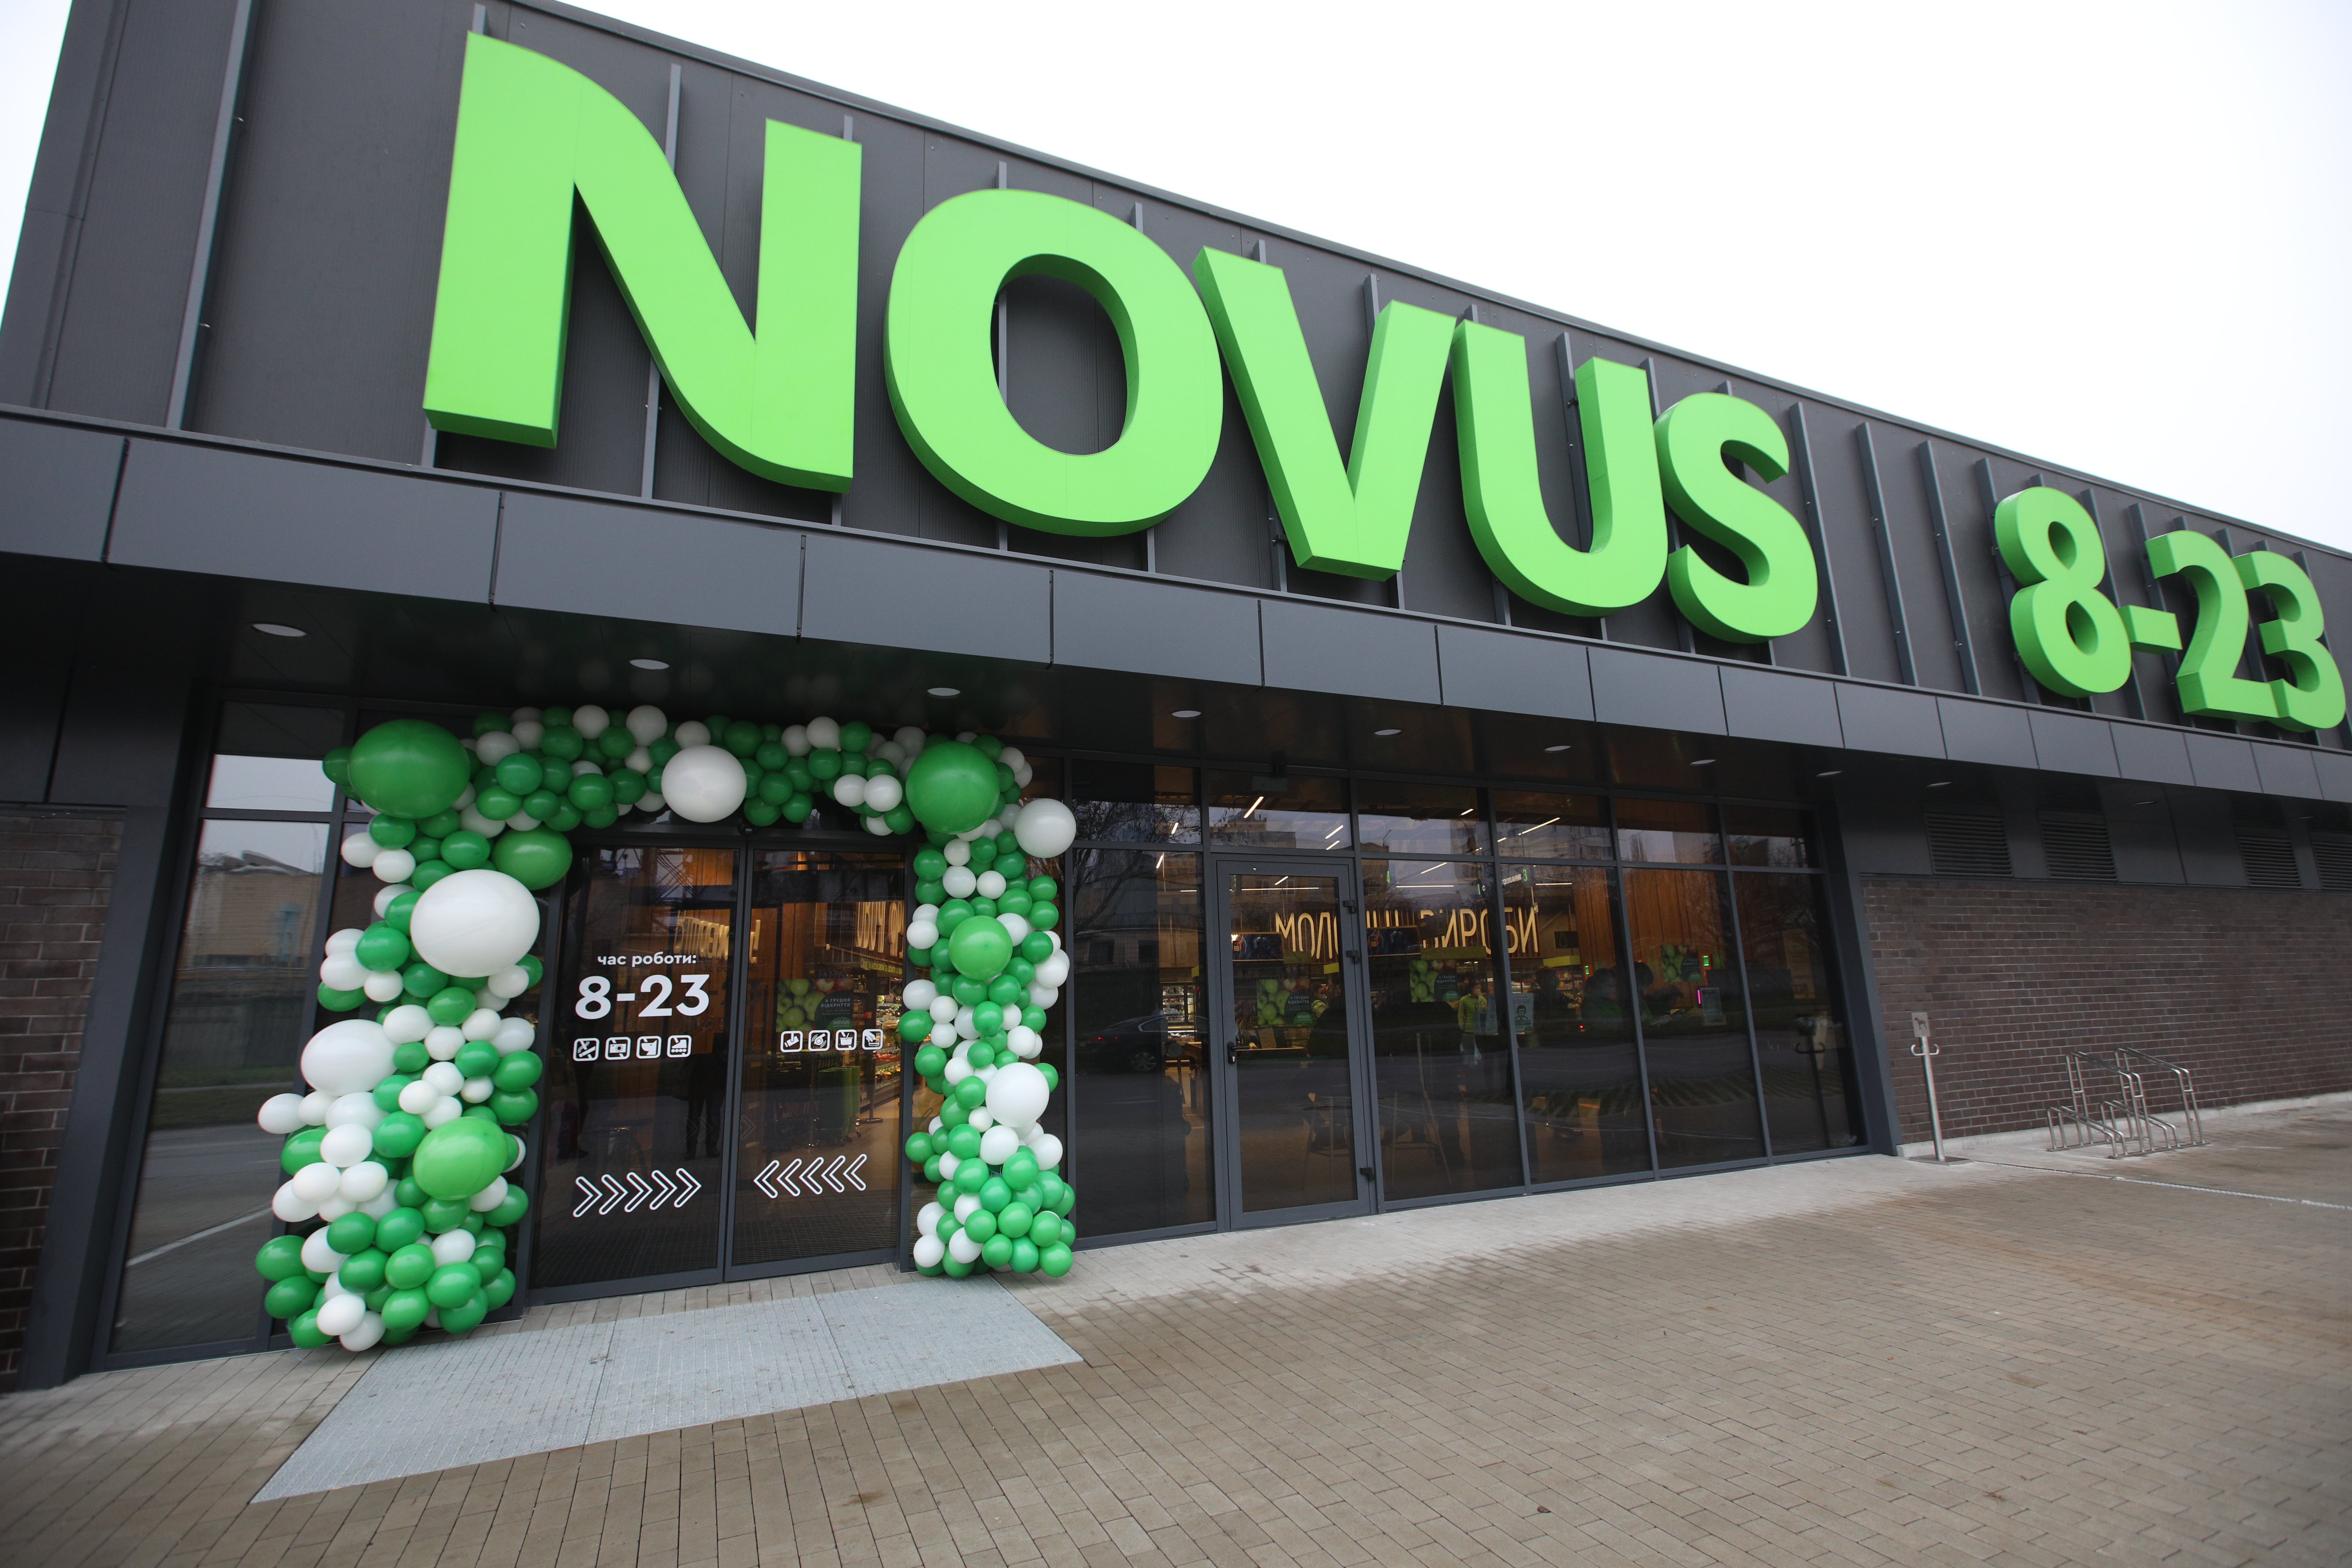 NOVUS відкрив новий супермаркет на Біляшевського, 10